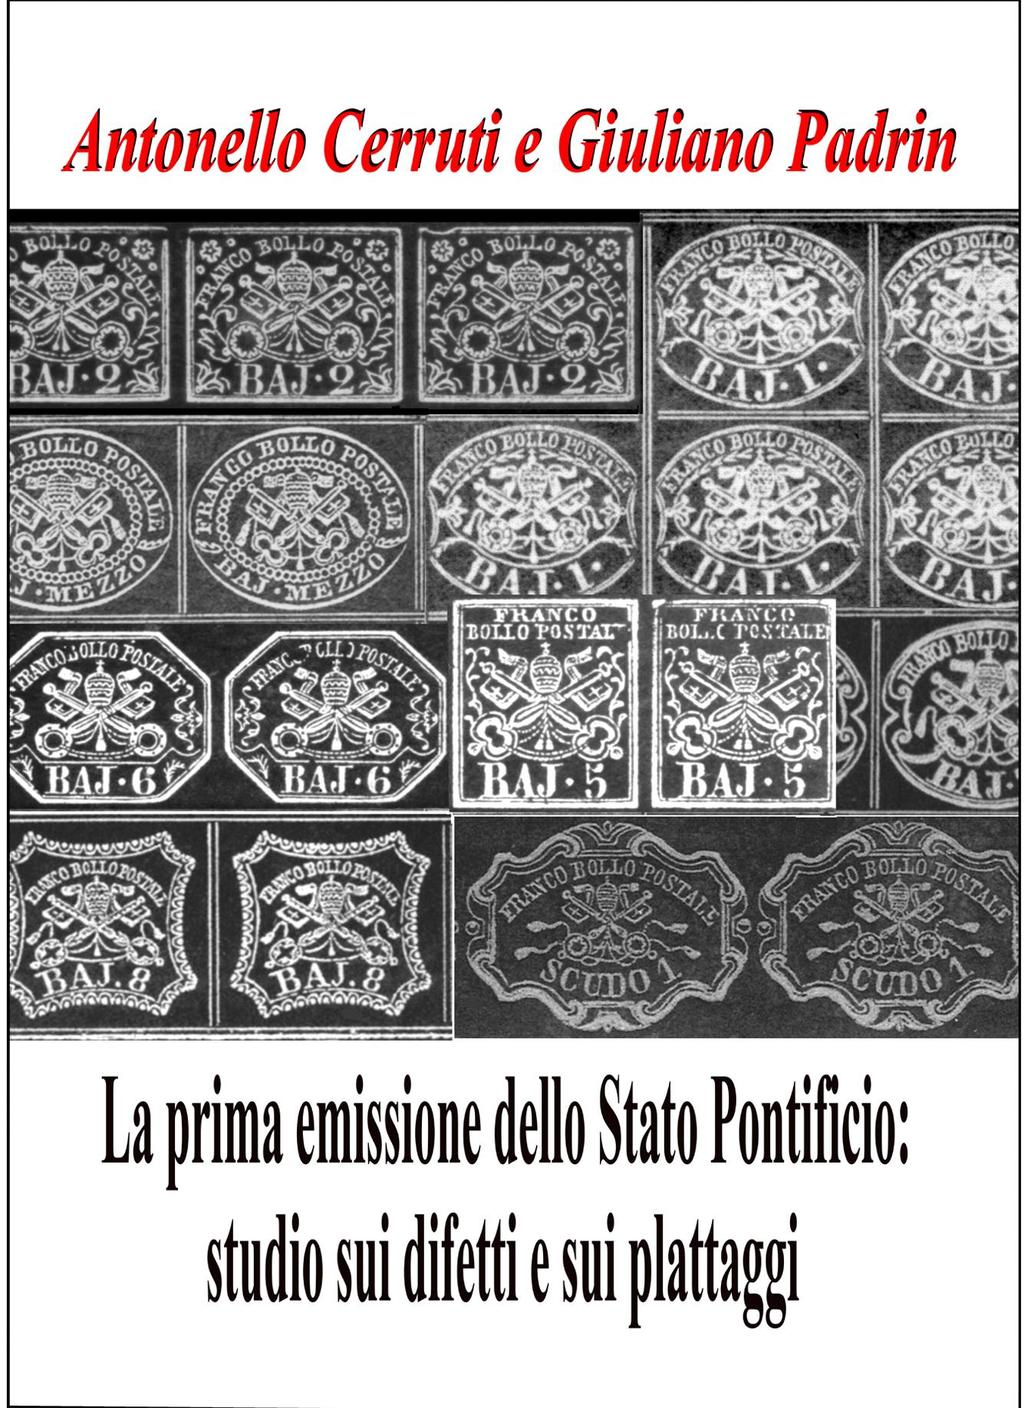 A chi volesse approfondire lo studio e la conoscenza dei francobolli della prima emissione dello Stato Pontificio e poter plattare tutti